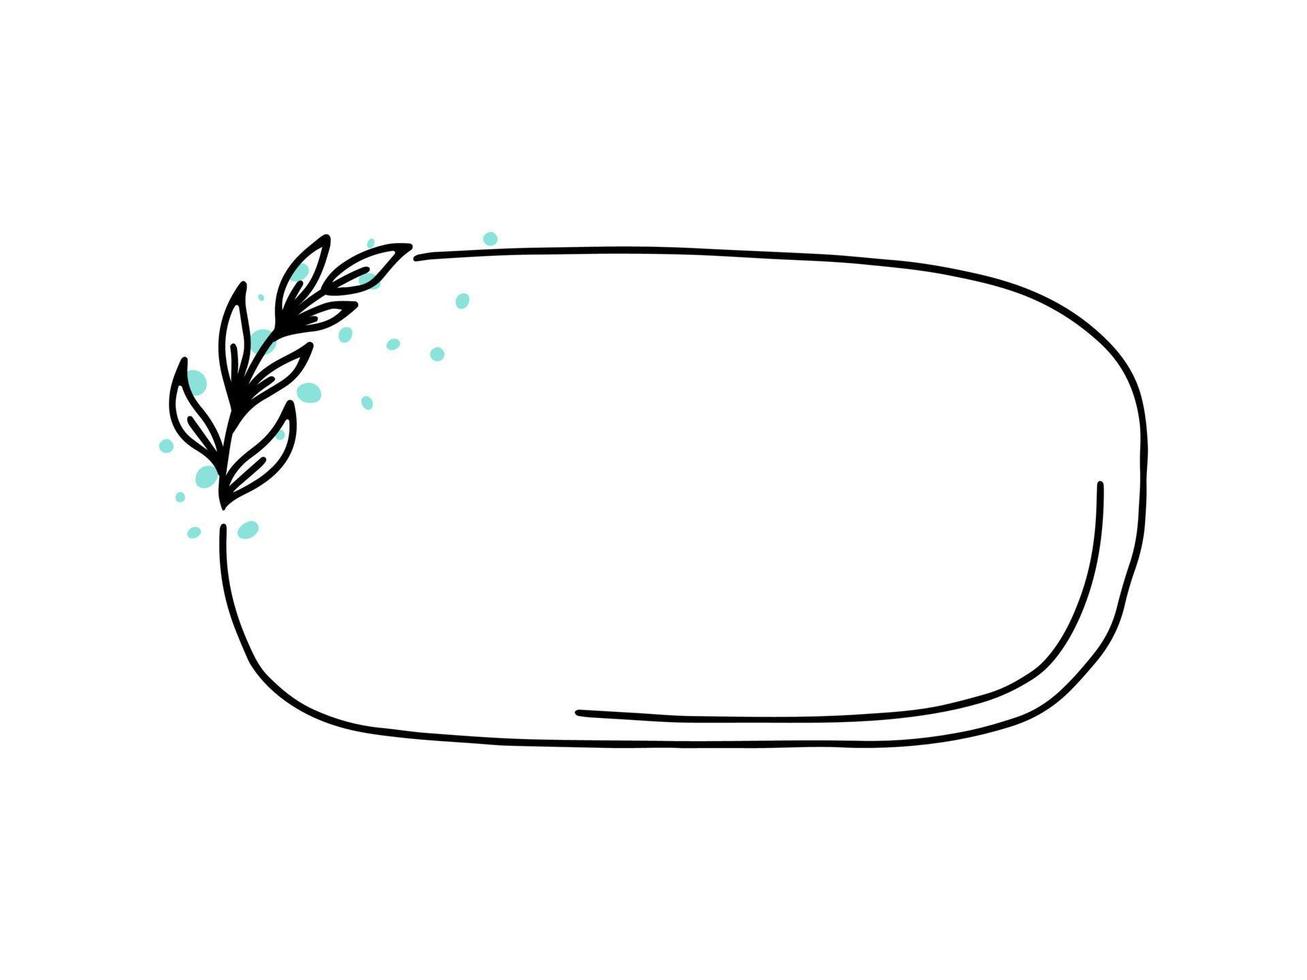 marco floral vectorial ovalado horizontal, borde con elementos de hoja de garabato. estilo de boceto dibujado a mano para invitación, tarjeta de felicitación, redes sociales vector